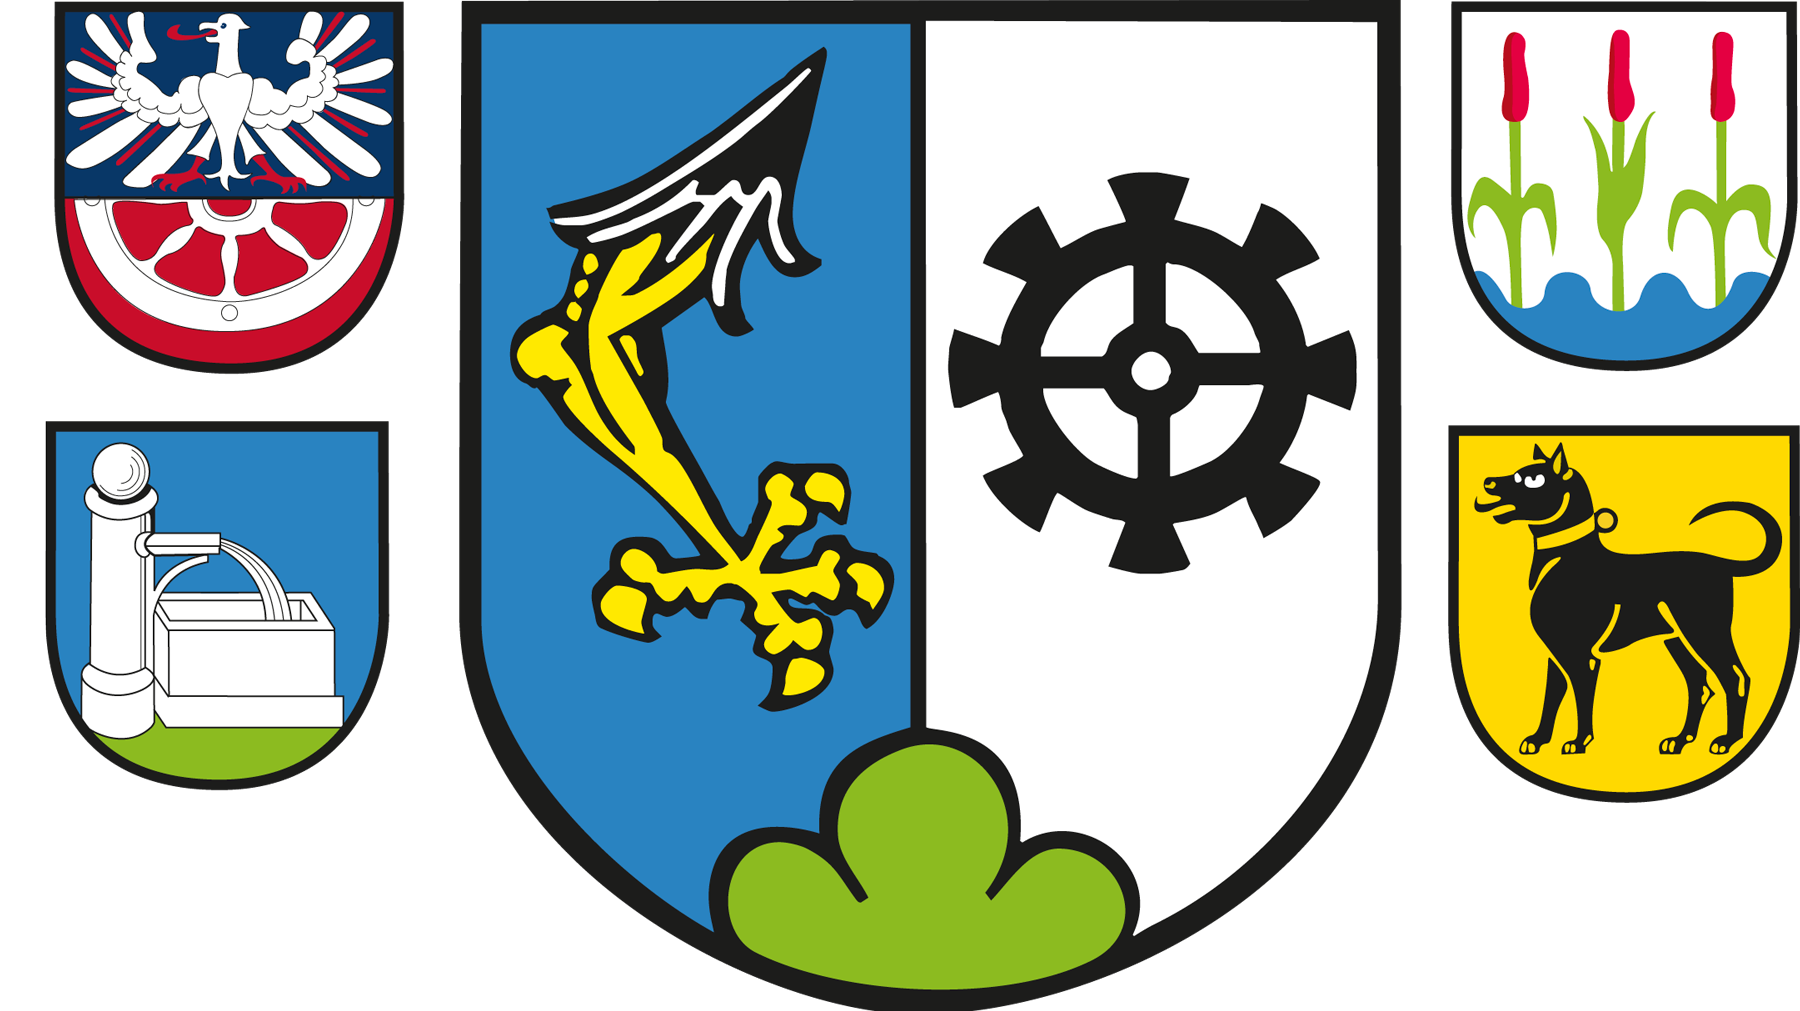 Wappen mit Teilorten Möckmühl